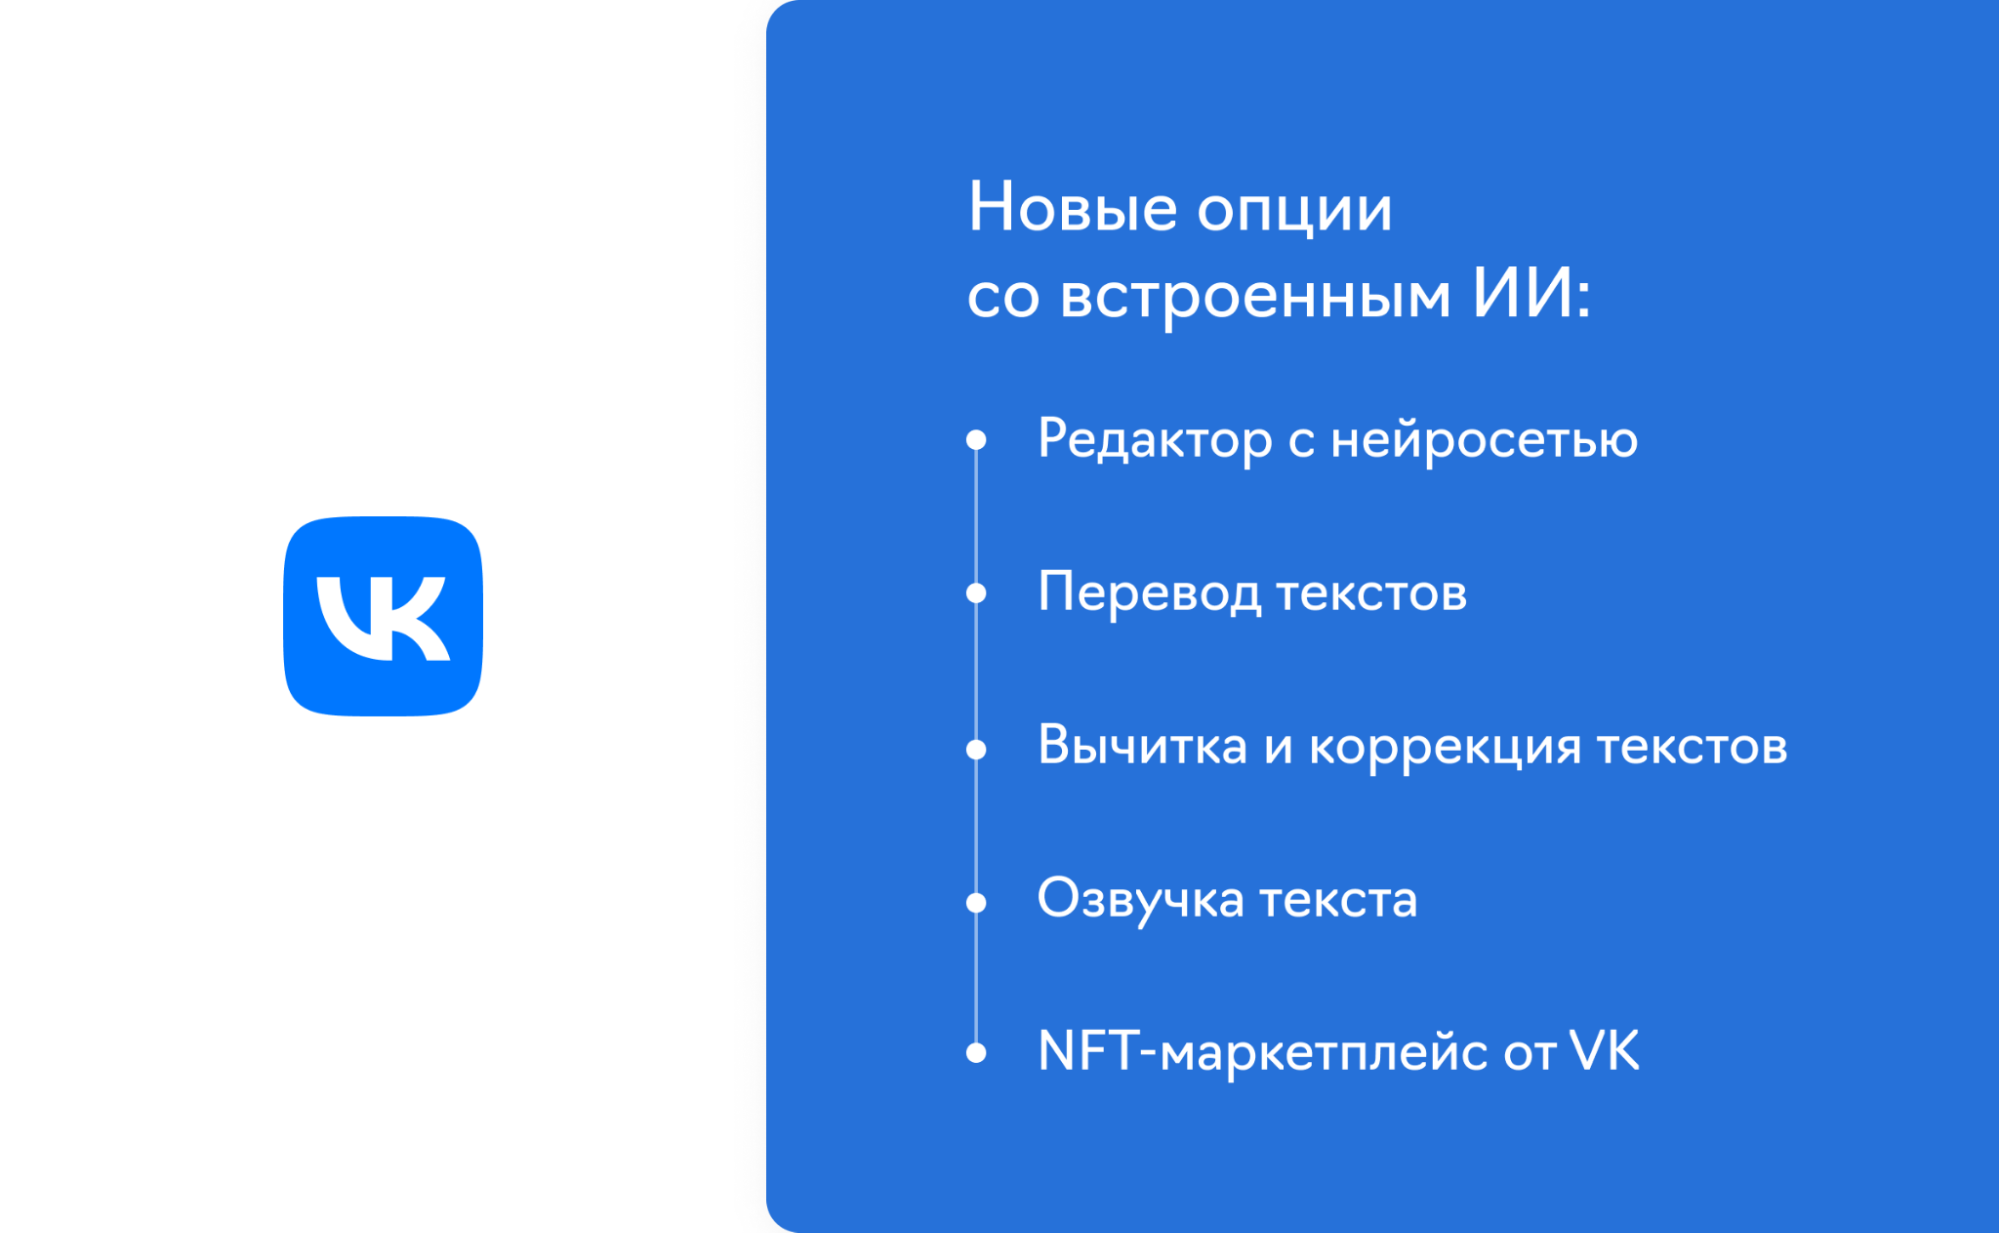 Технологии машинного обучения в инструментах для создания контента ВКонтакте